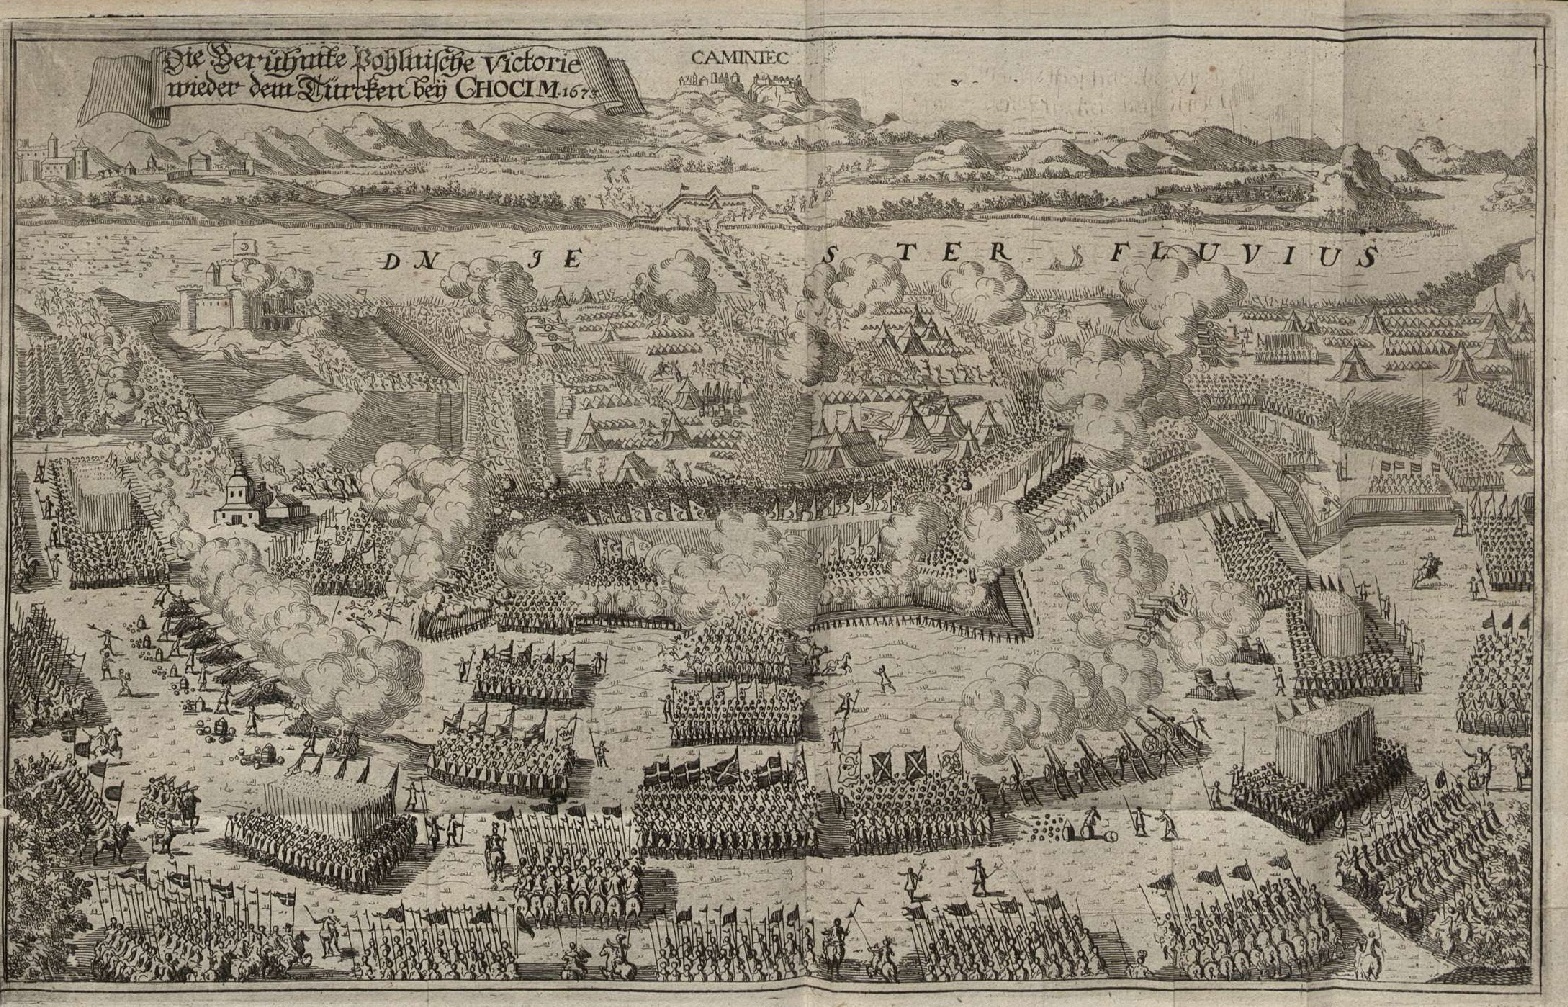  Хотинская битва 1673